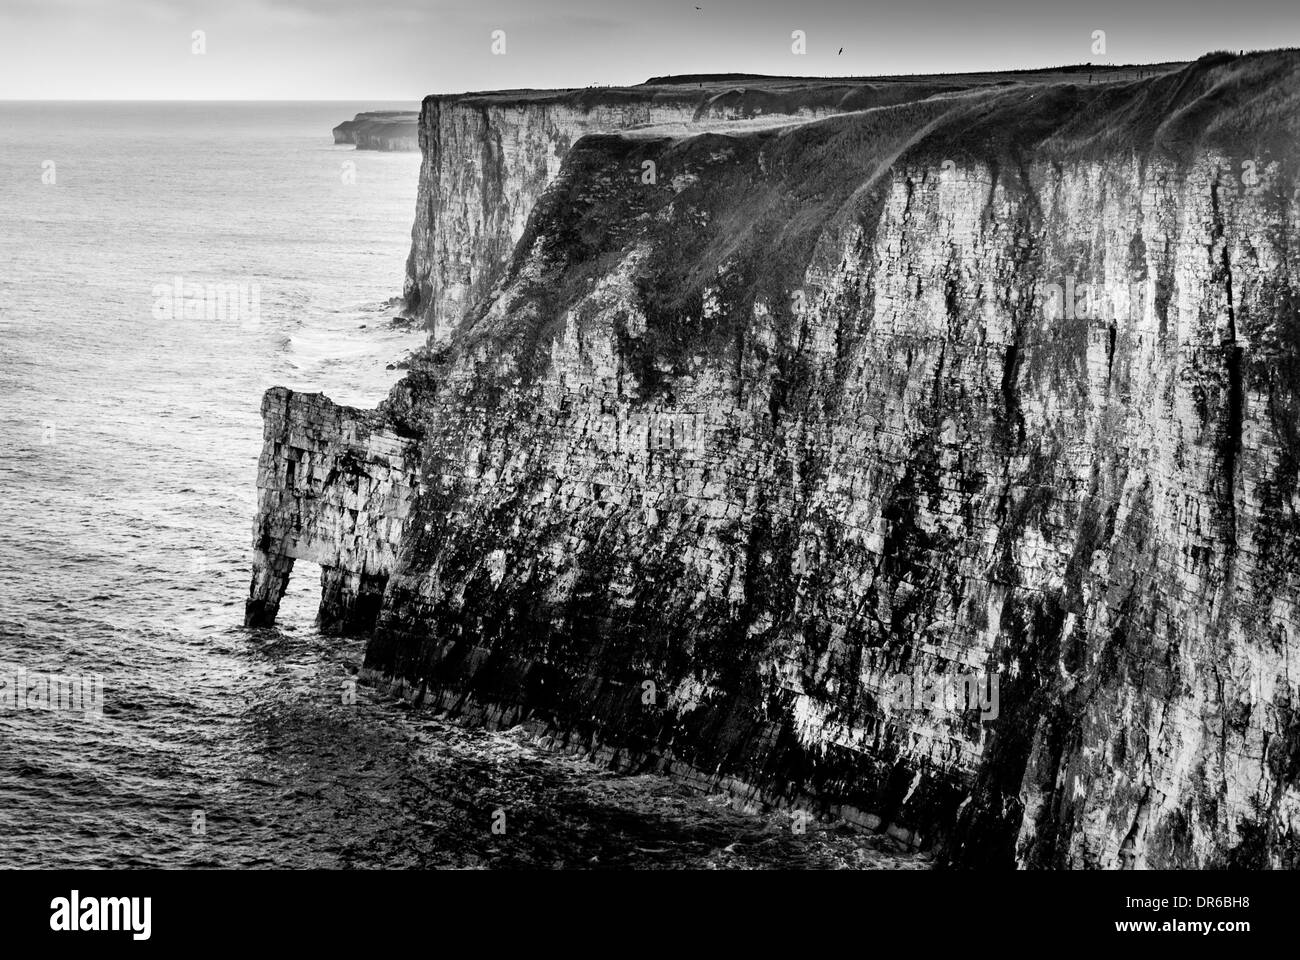 Chute du site RSPB de Bempton Cliffs sur la côte est de l'Angleterre Banque D'Images